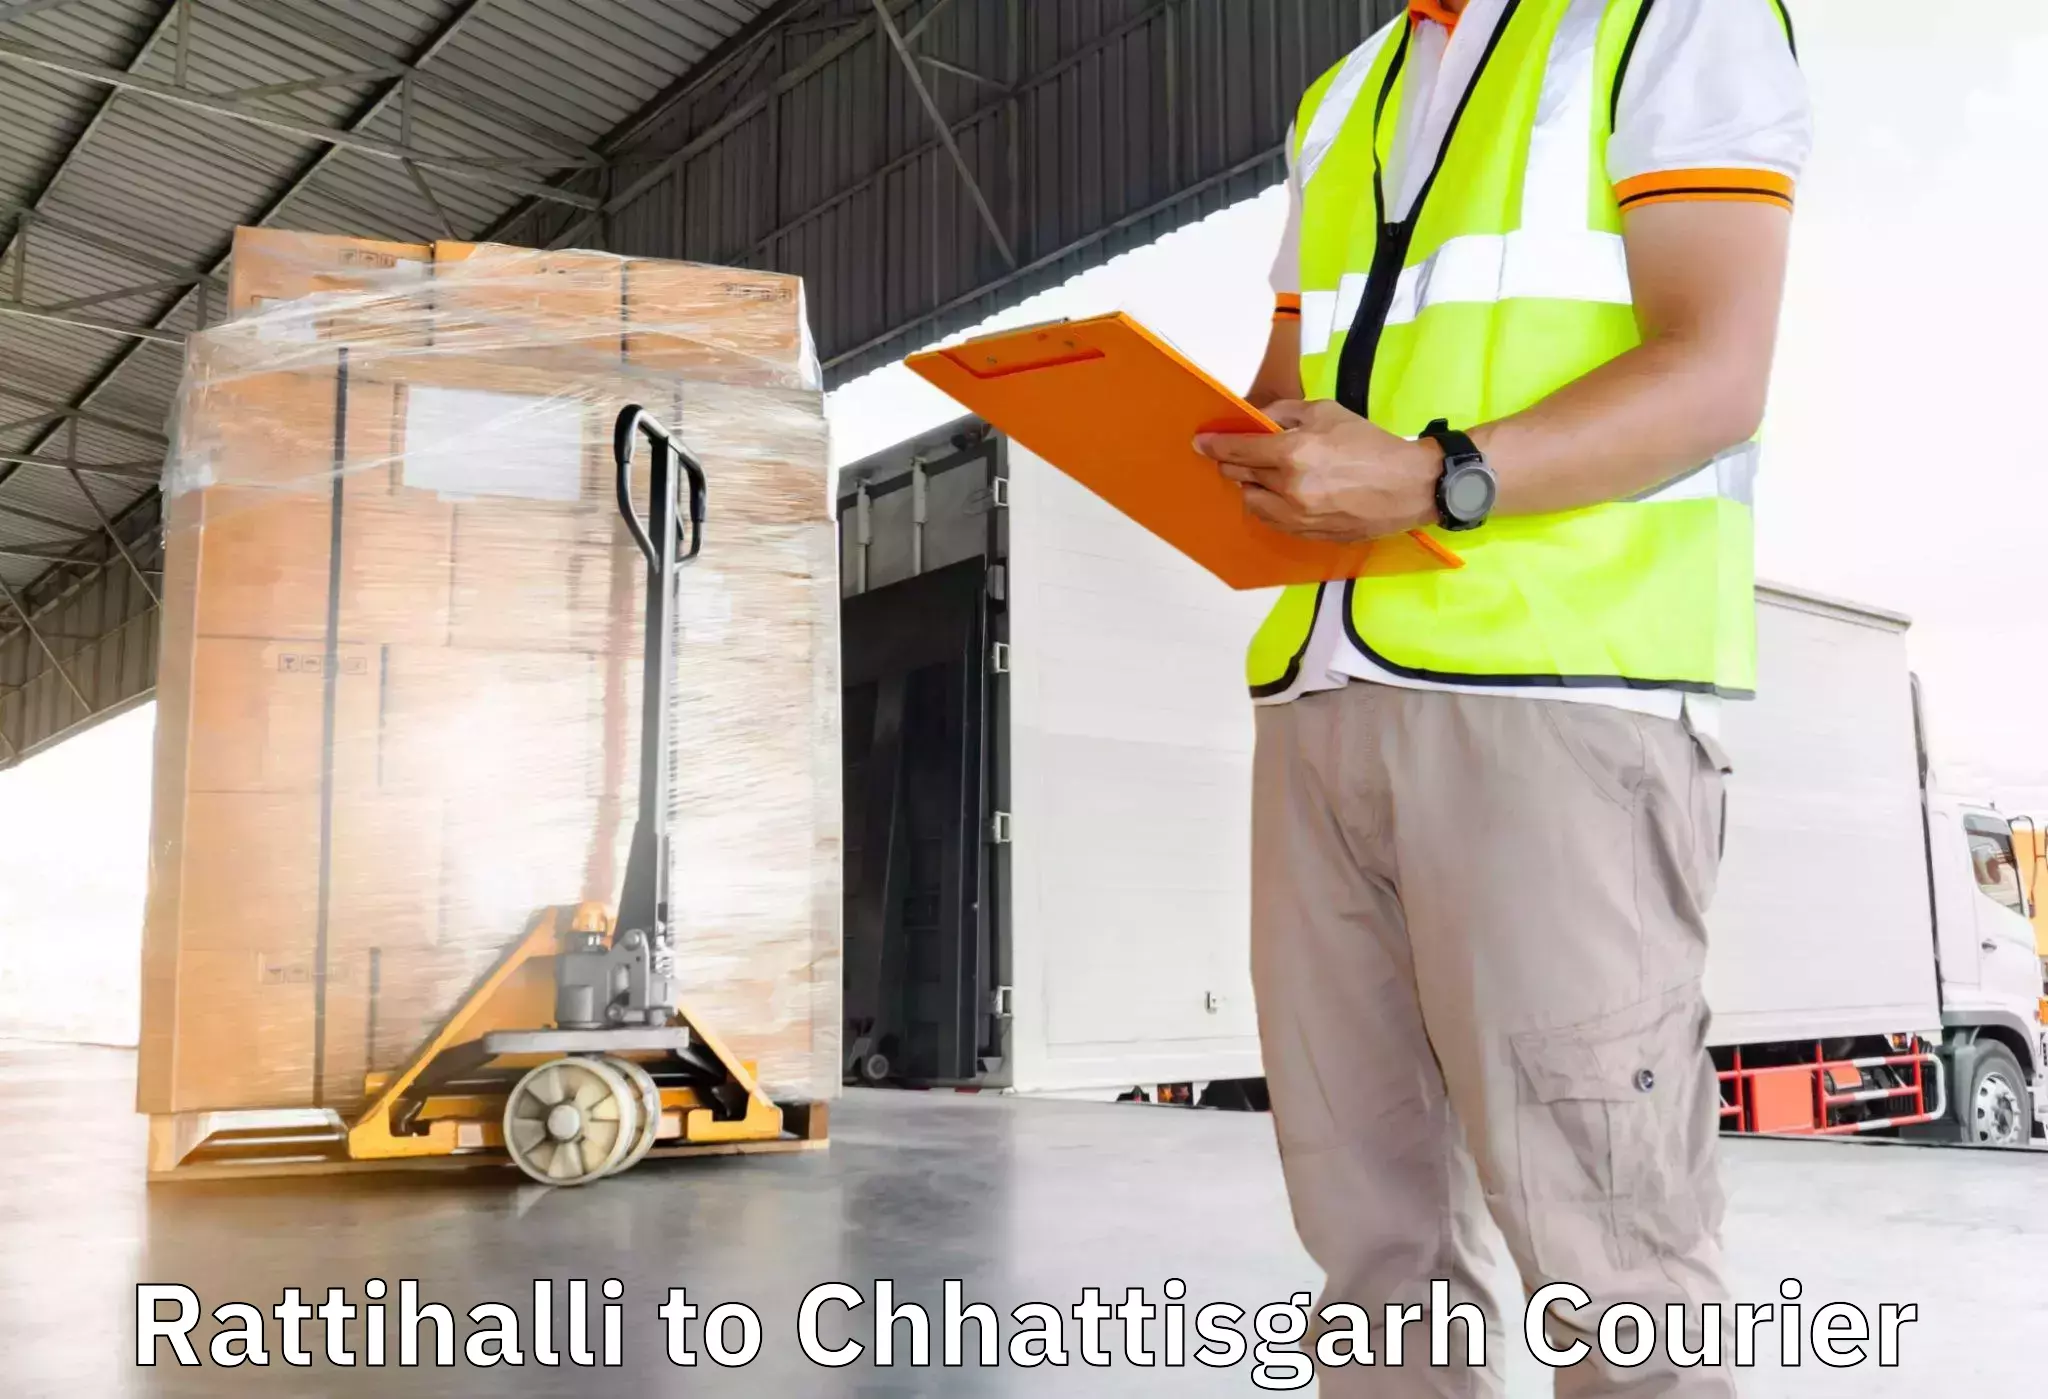 Furniture moving specialists Rattihalli to keshkal